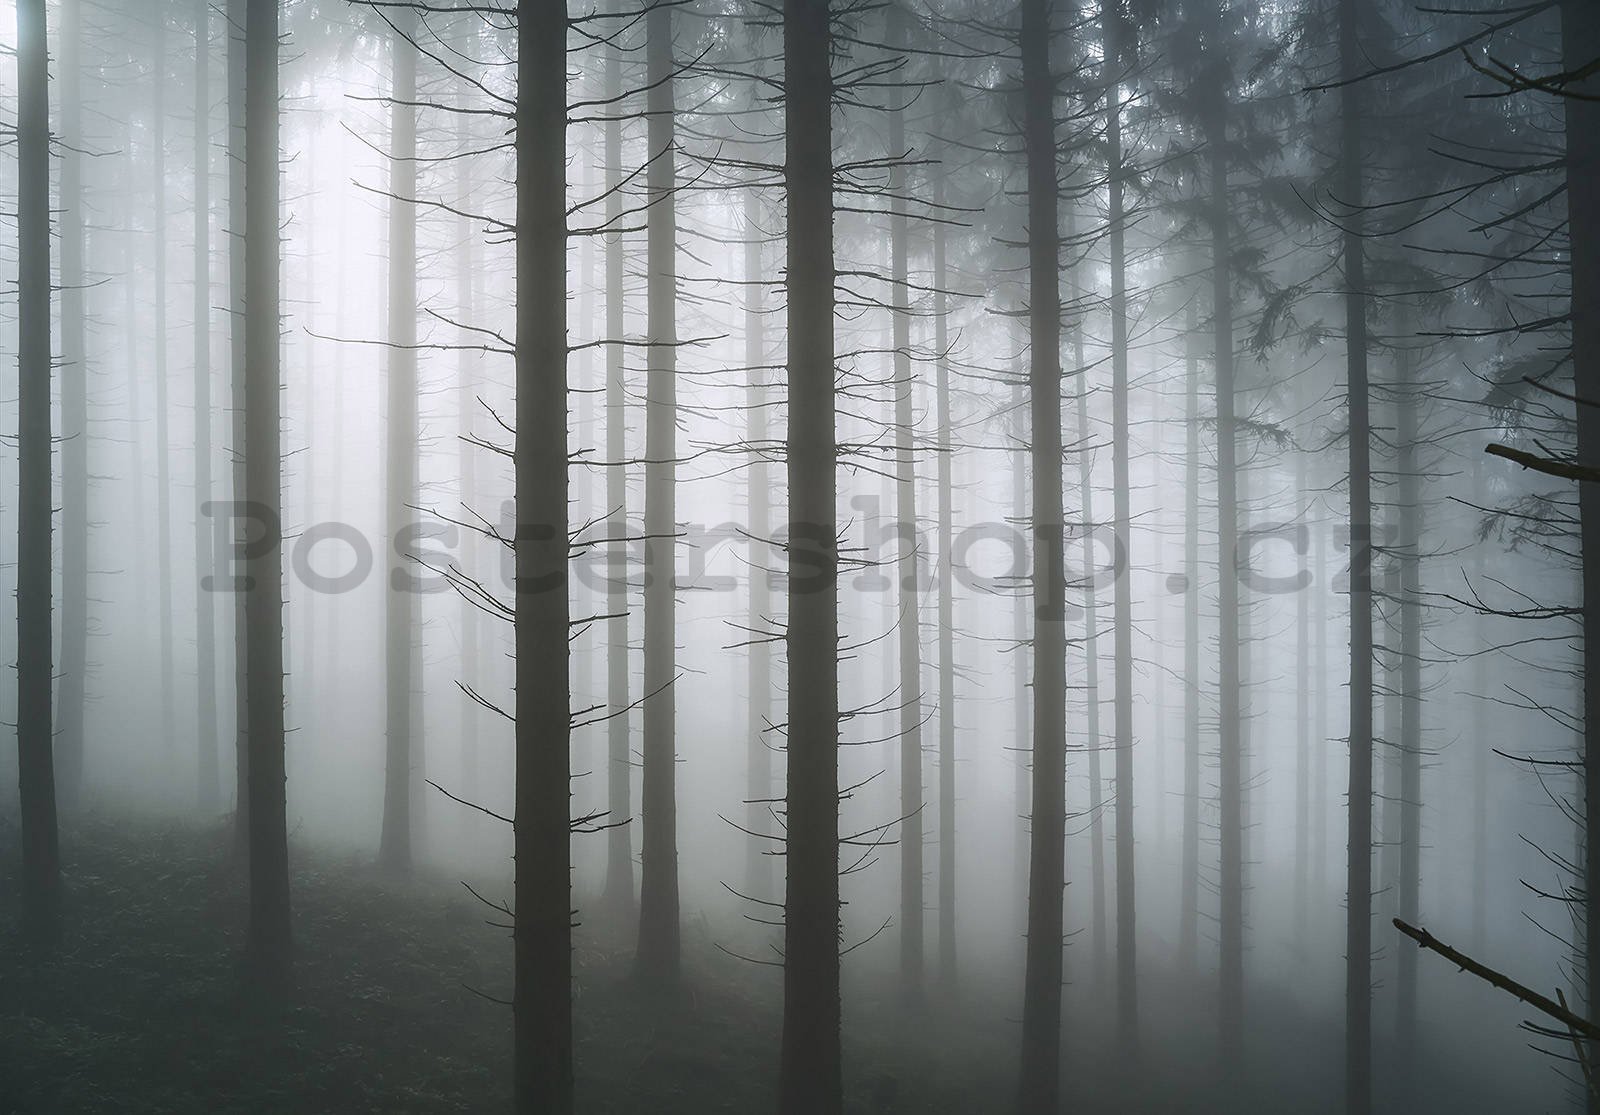 Fototapeta vliesová: Strašidelný les (1) - 254x184 cm